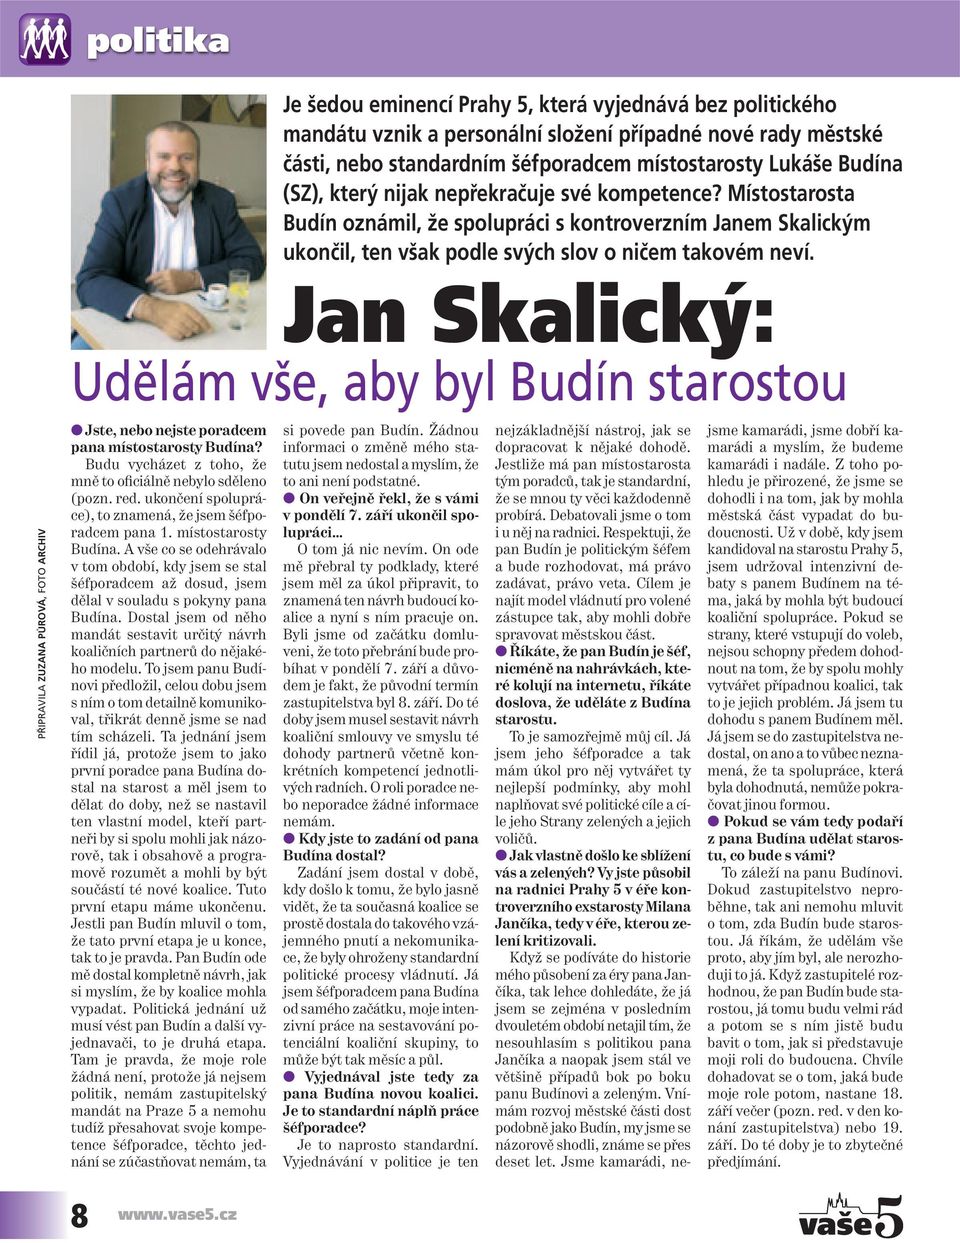 Jan Skalický: Udělám vše, aby byl Budín starostou PŘIPRAVILA ZUZANA PŮROVÁ, FOTO ARCHIV Jste, nebo nejste poradcem pana místostarosty Budína?